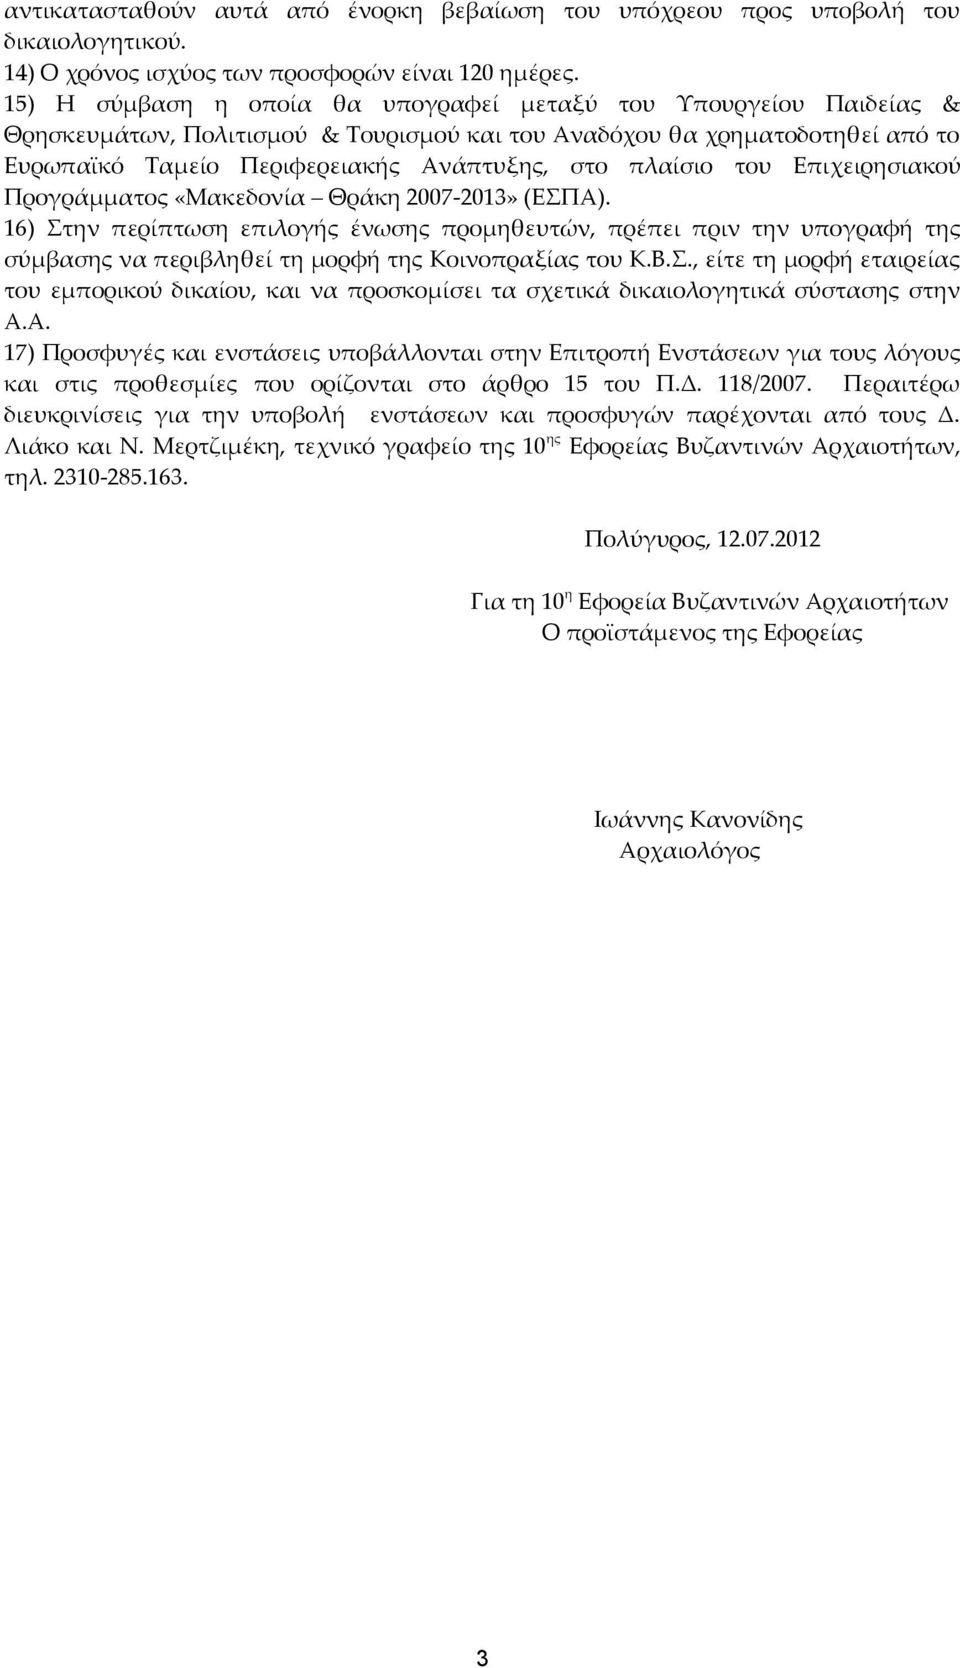 πλαίσιο του Επιχειρησιακού Προγράμματος «Μακεδονία Θράκη 2007-2013» (ΕΣΠΑ).